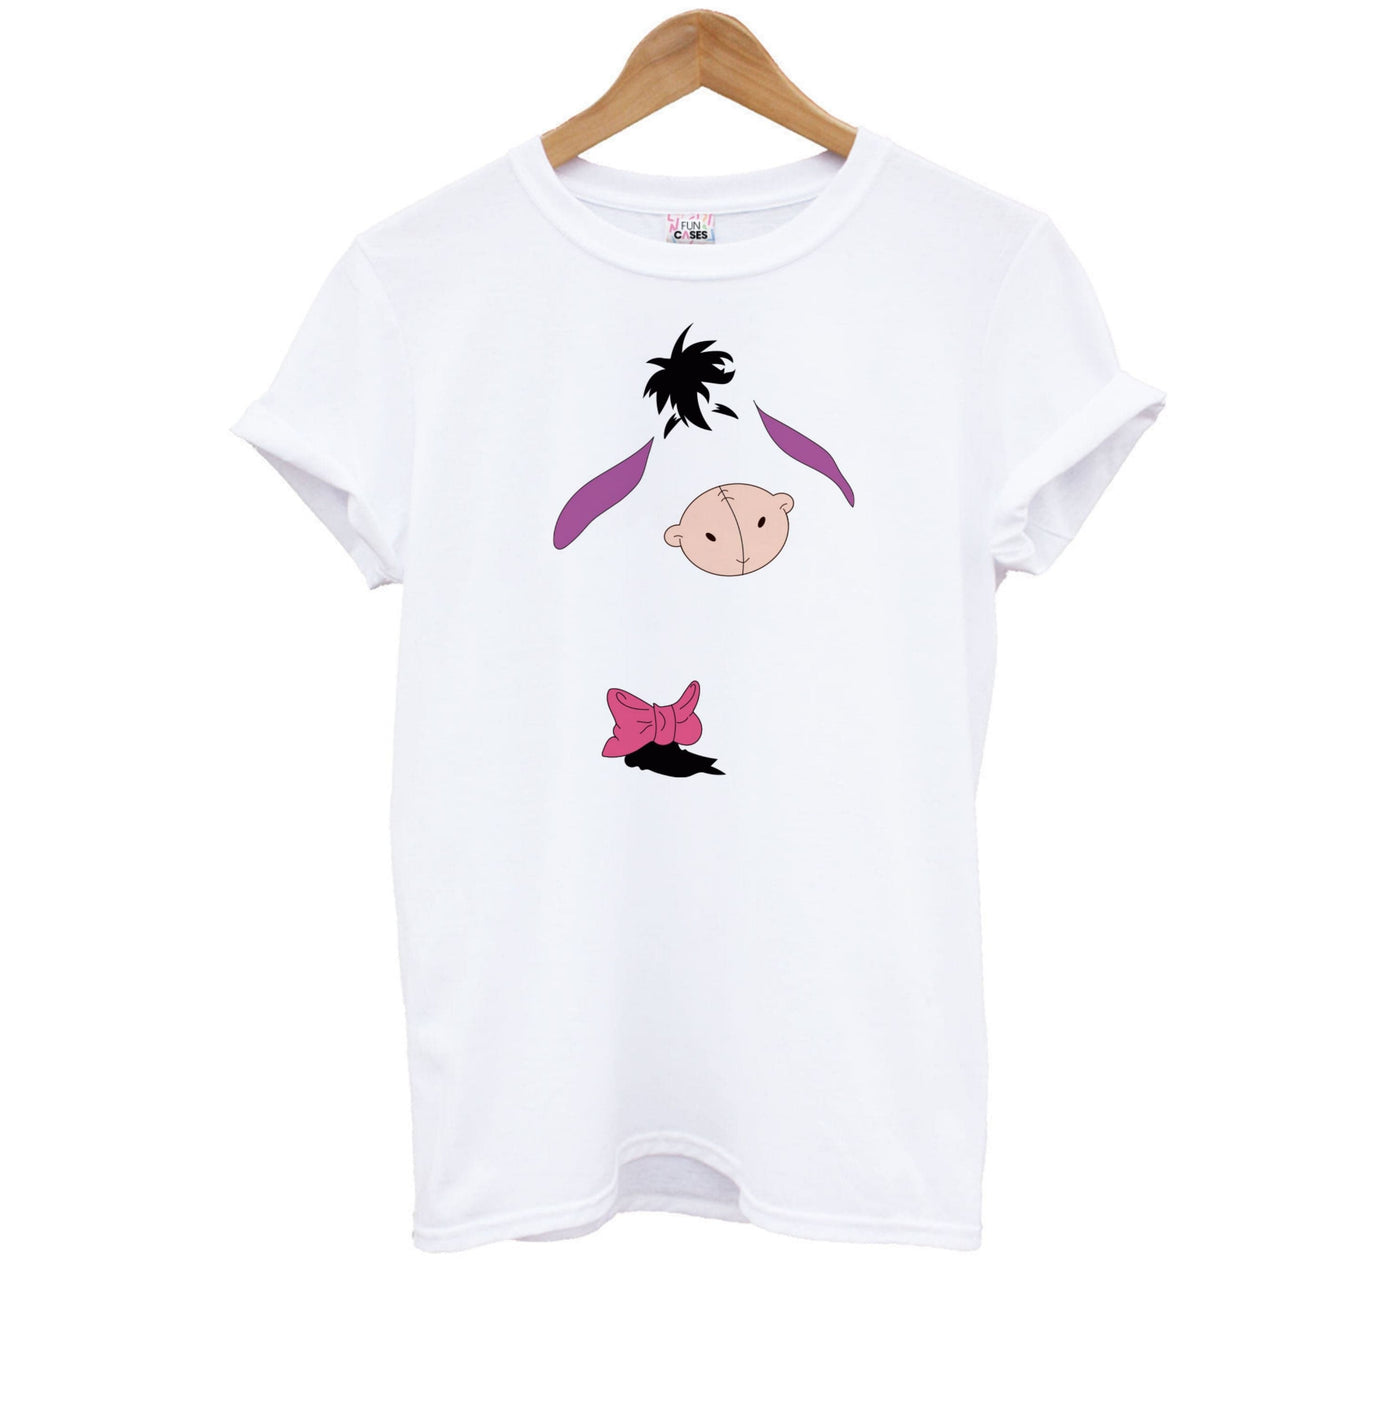 Faceless Eeyore Kids T-Shirt